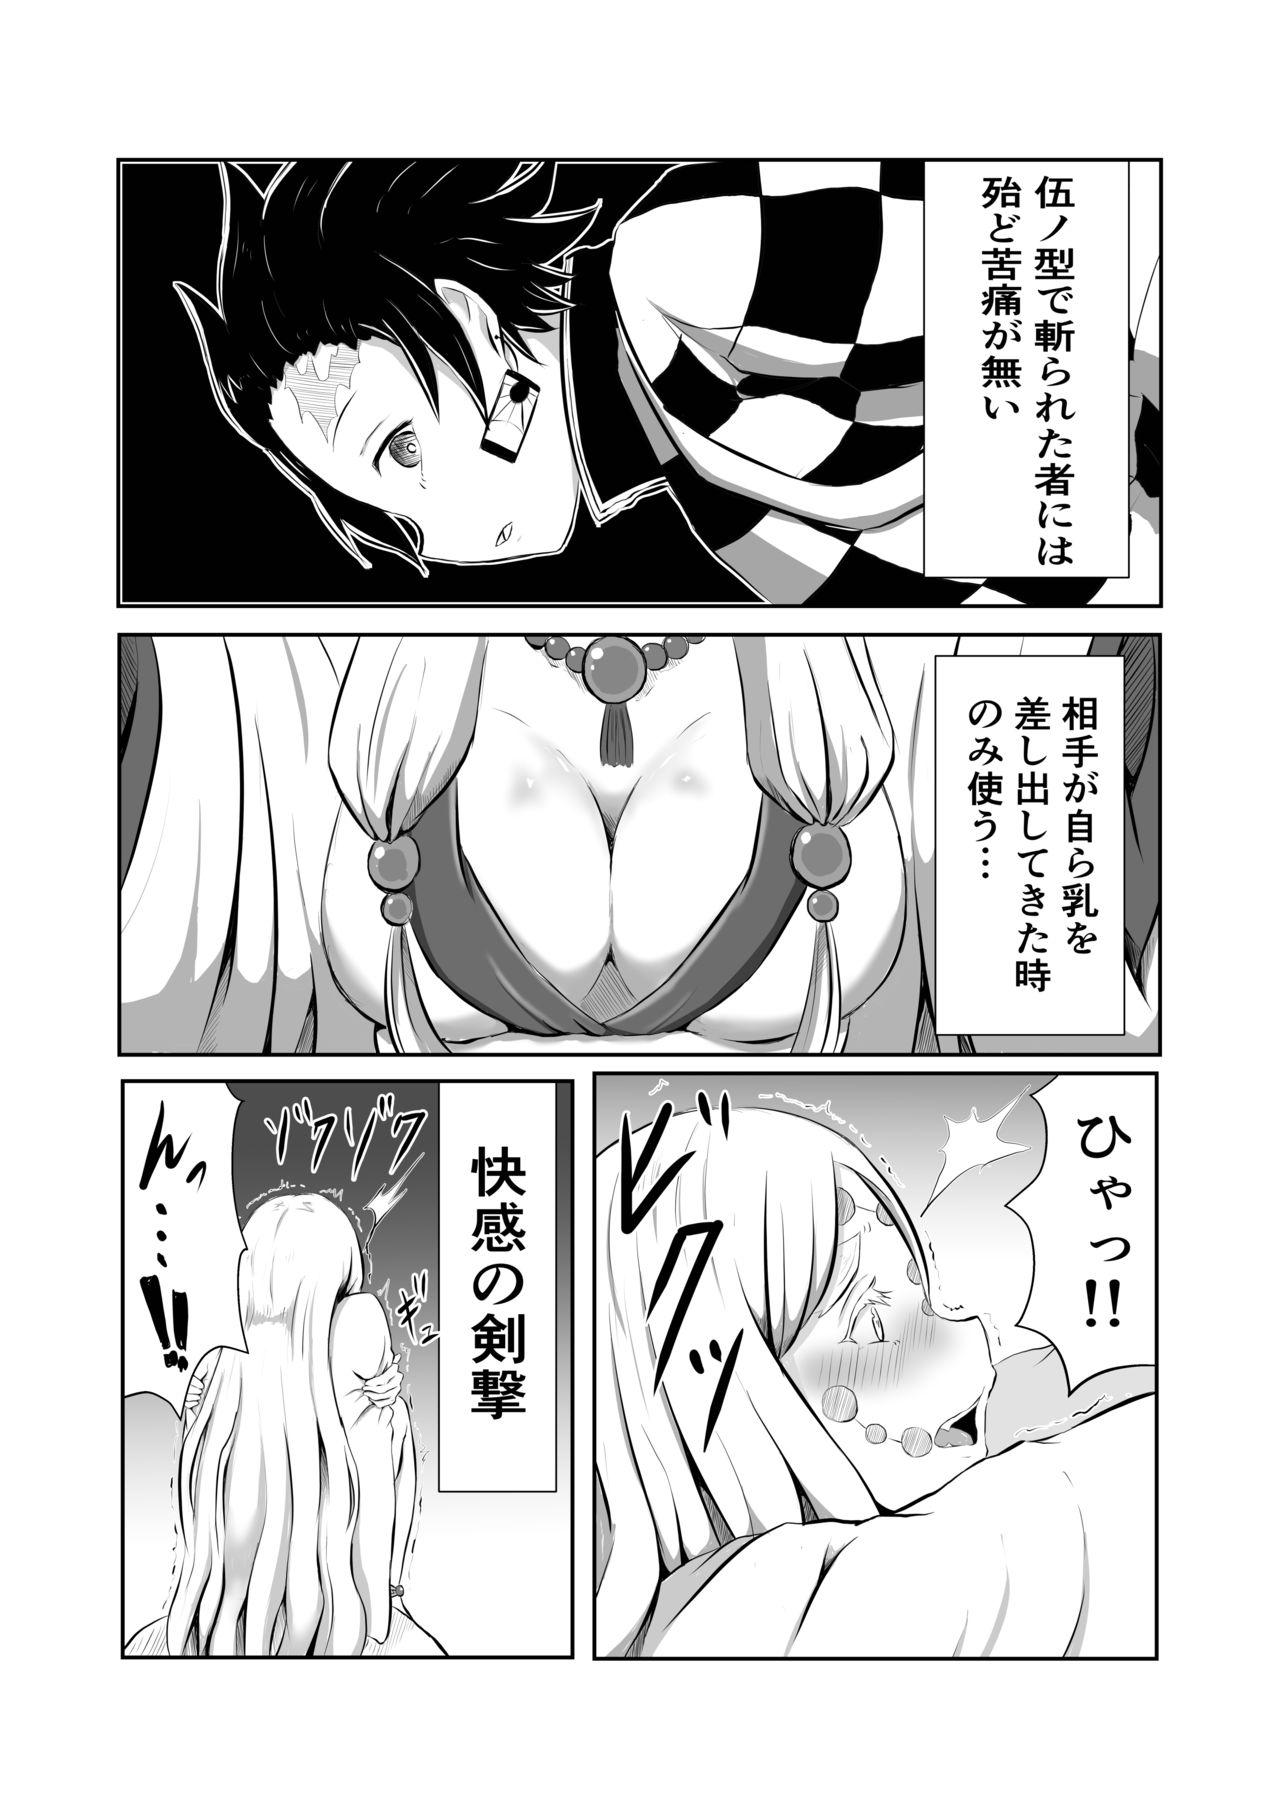 Naked Women Fucking Hinokami Sex. - Kimetsu no yaiba | demon slayer Hard Fucking - Page 4